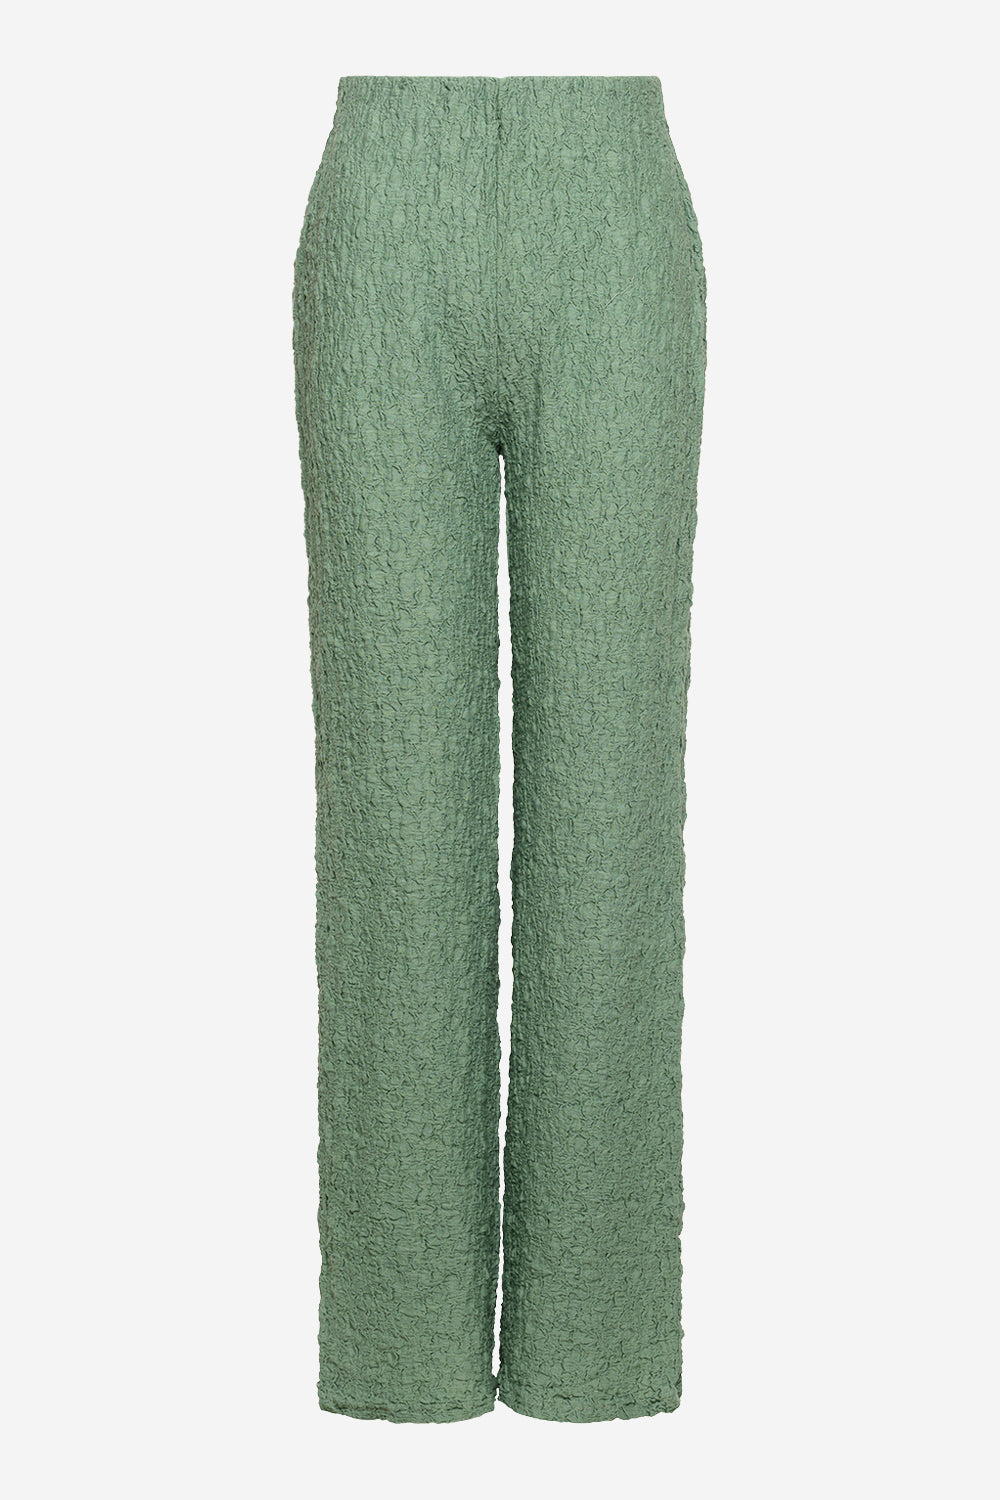 Loan Pants Green von Noella